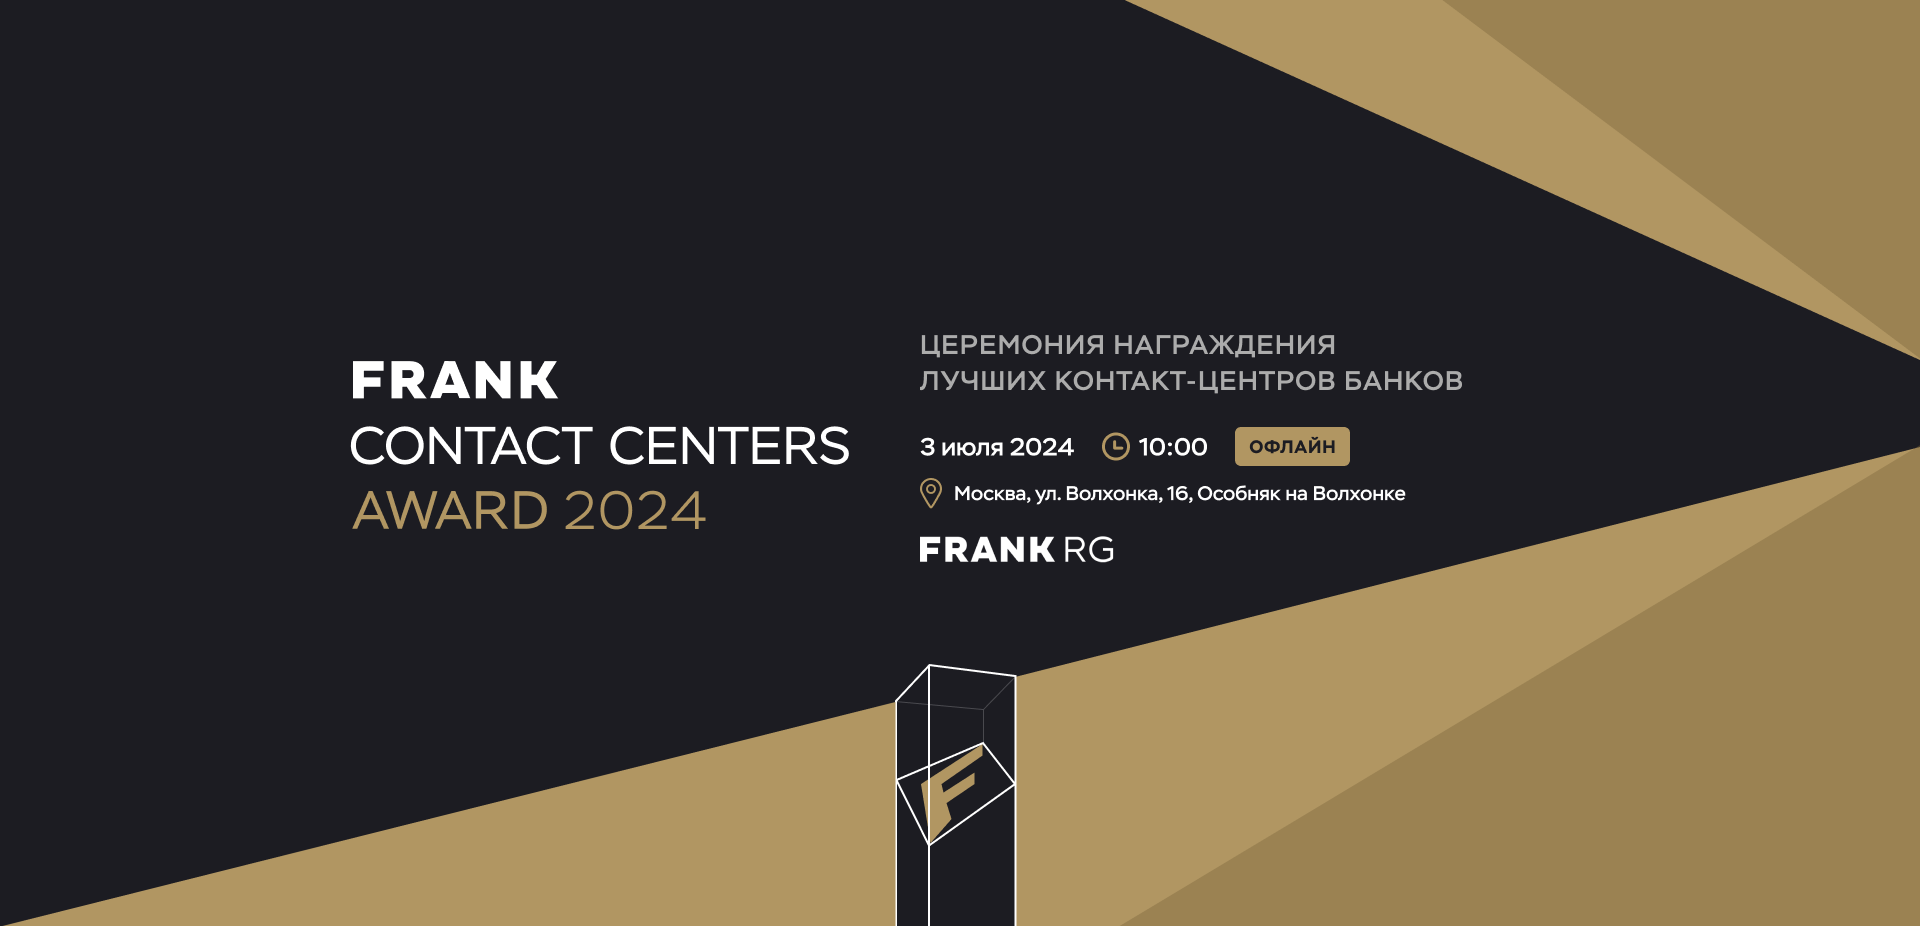 Frank Contact Centers Award 2024